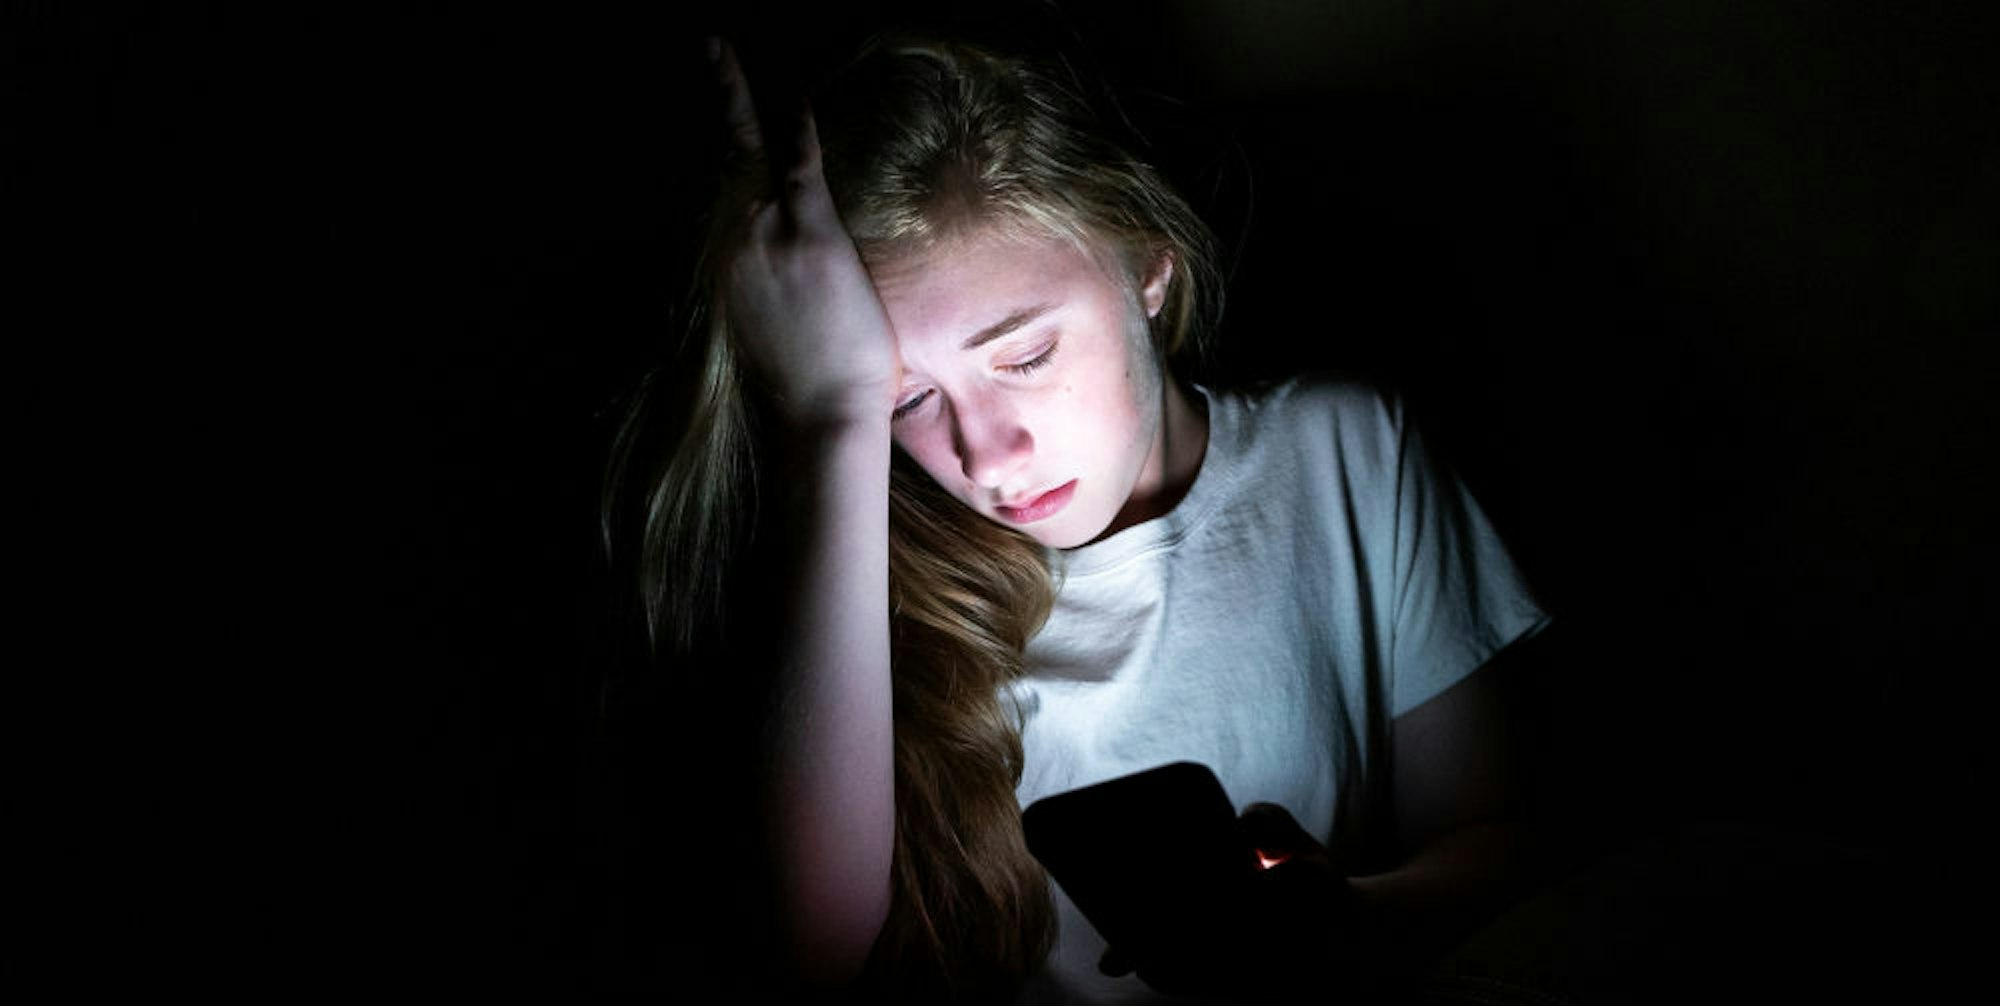 Die meisten Opfer von Cybergrooming sind zwischen zehn und 14 Jahre alt.